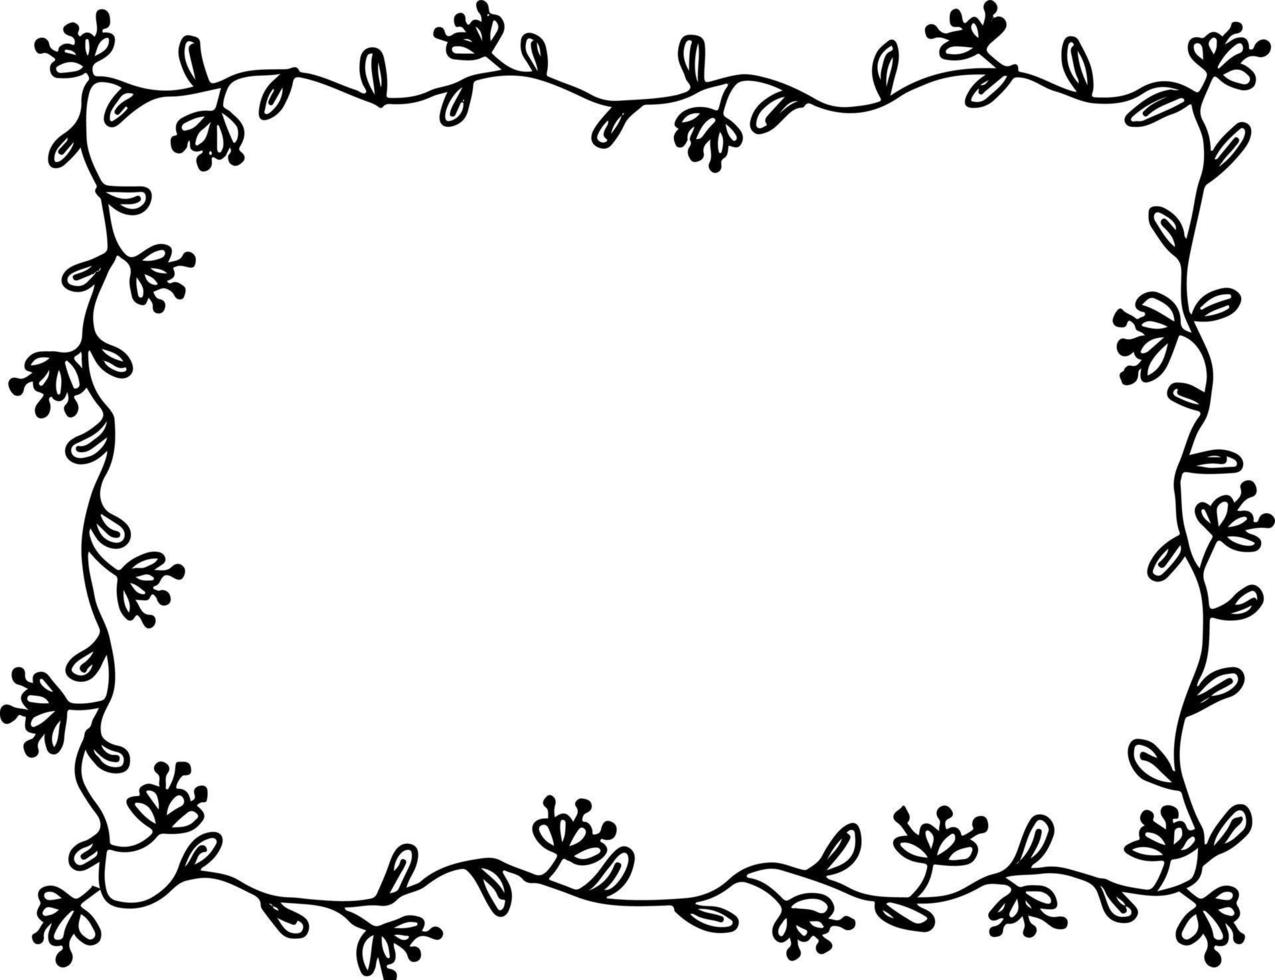 circulaire bloemen ornament vector illustratie in zwart en wit kleuren